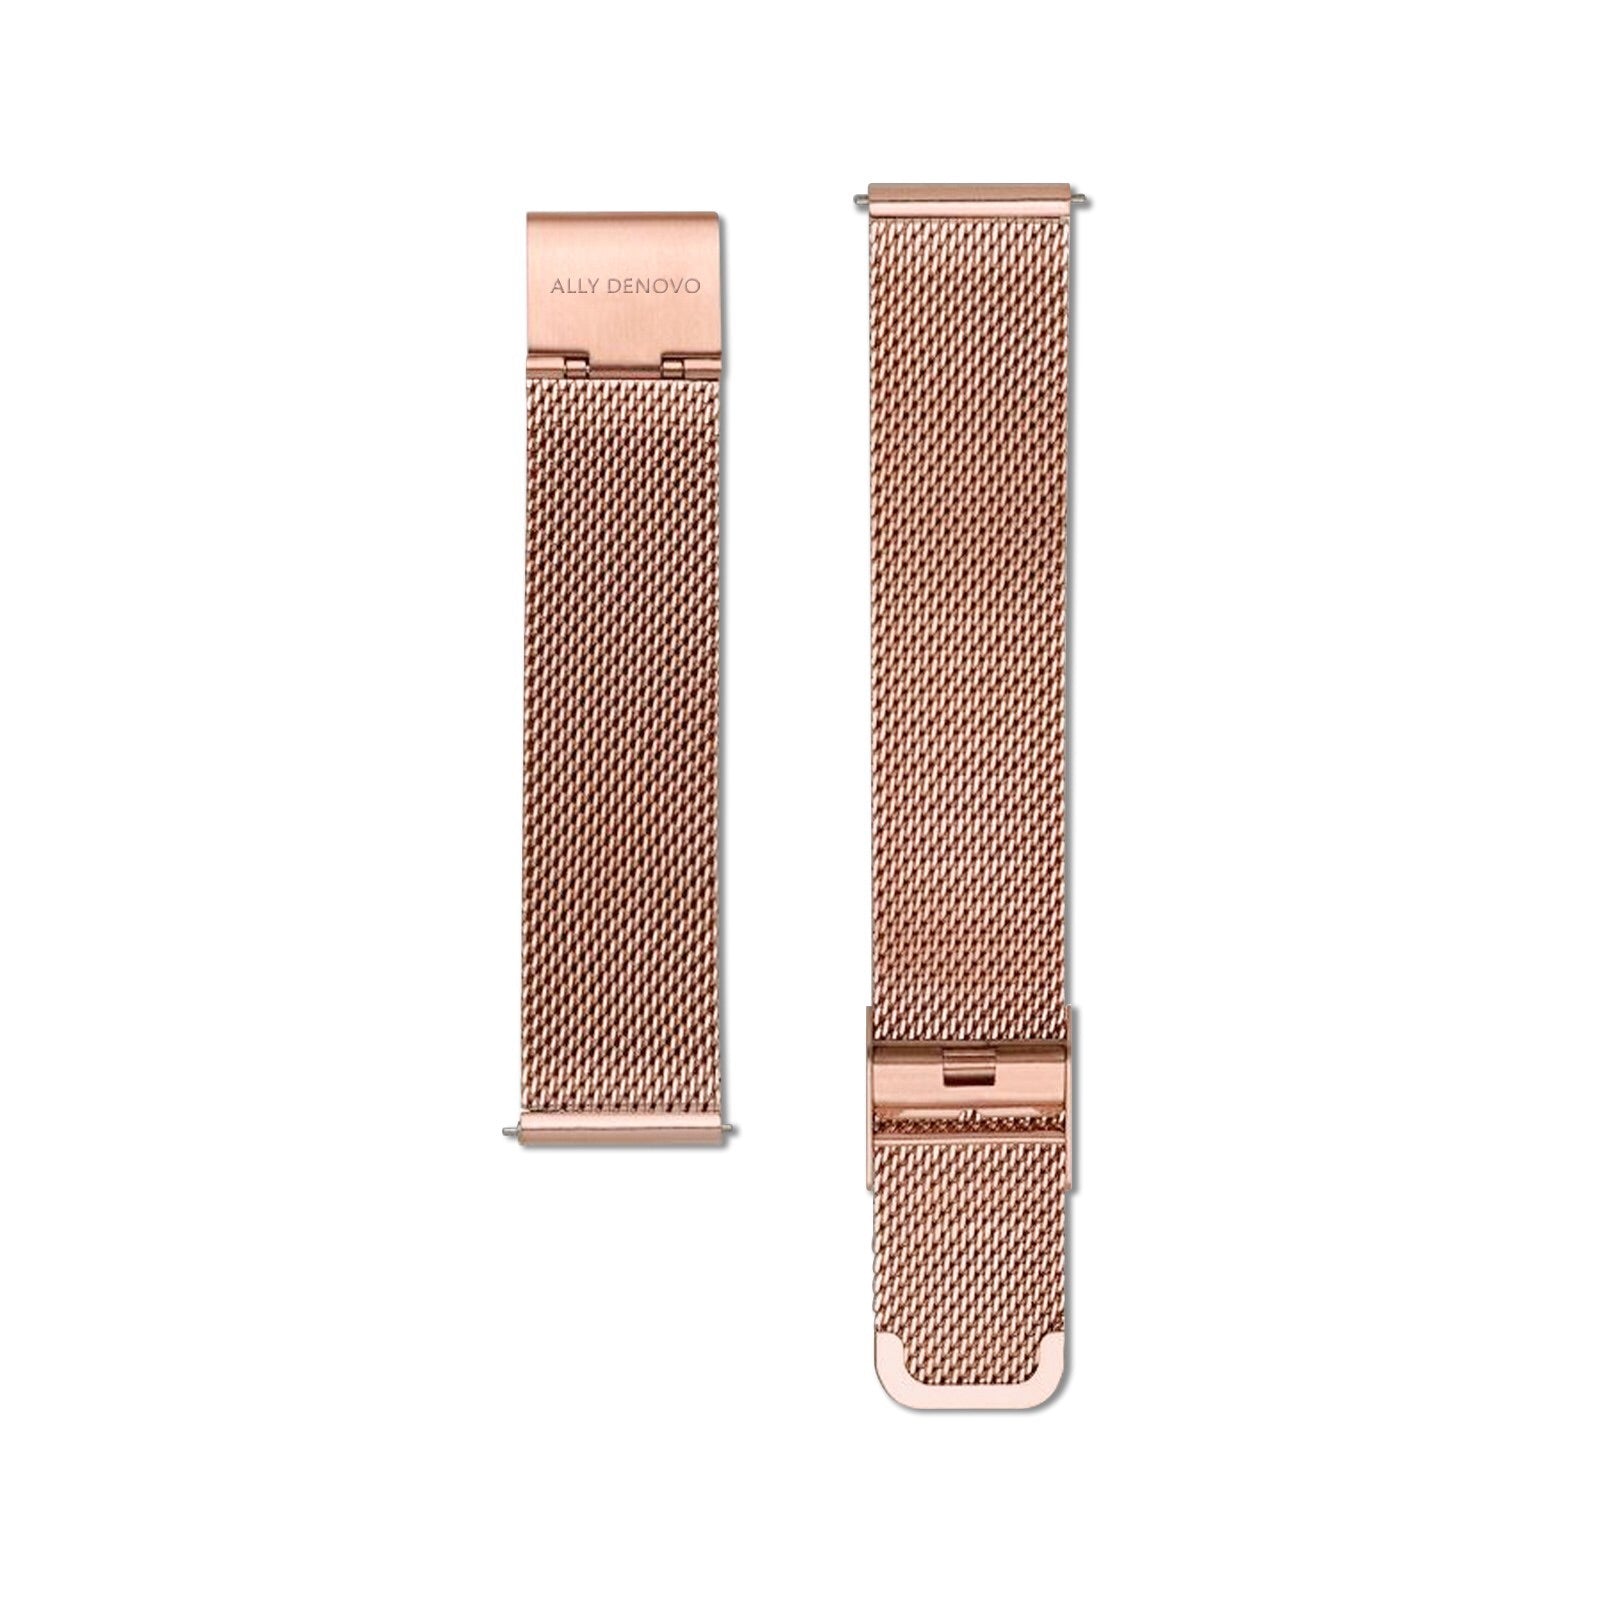 《單獨購買》玫瑰金不鏽鋼鏈帶/適用於36mm錶盤系列/簡易換錶帶開關式智慧扣環